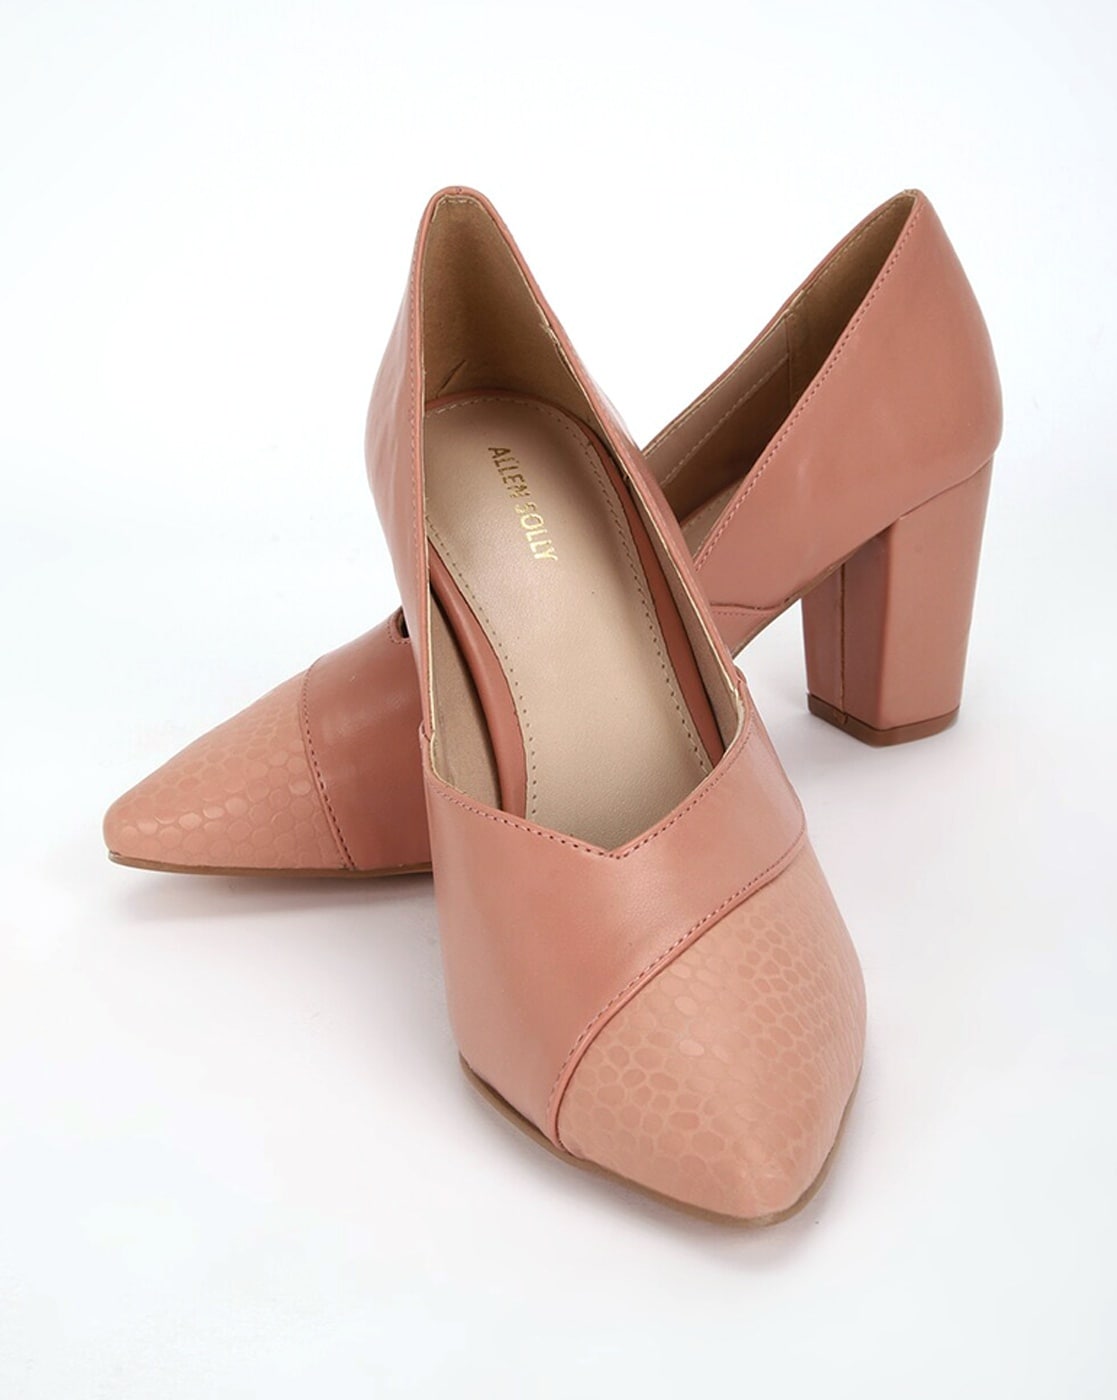 Sreeleathers - 👠Introducing more women's heels! 🛍Shop... | Facebook